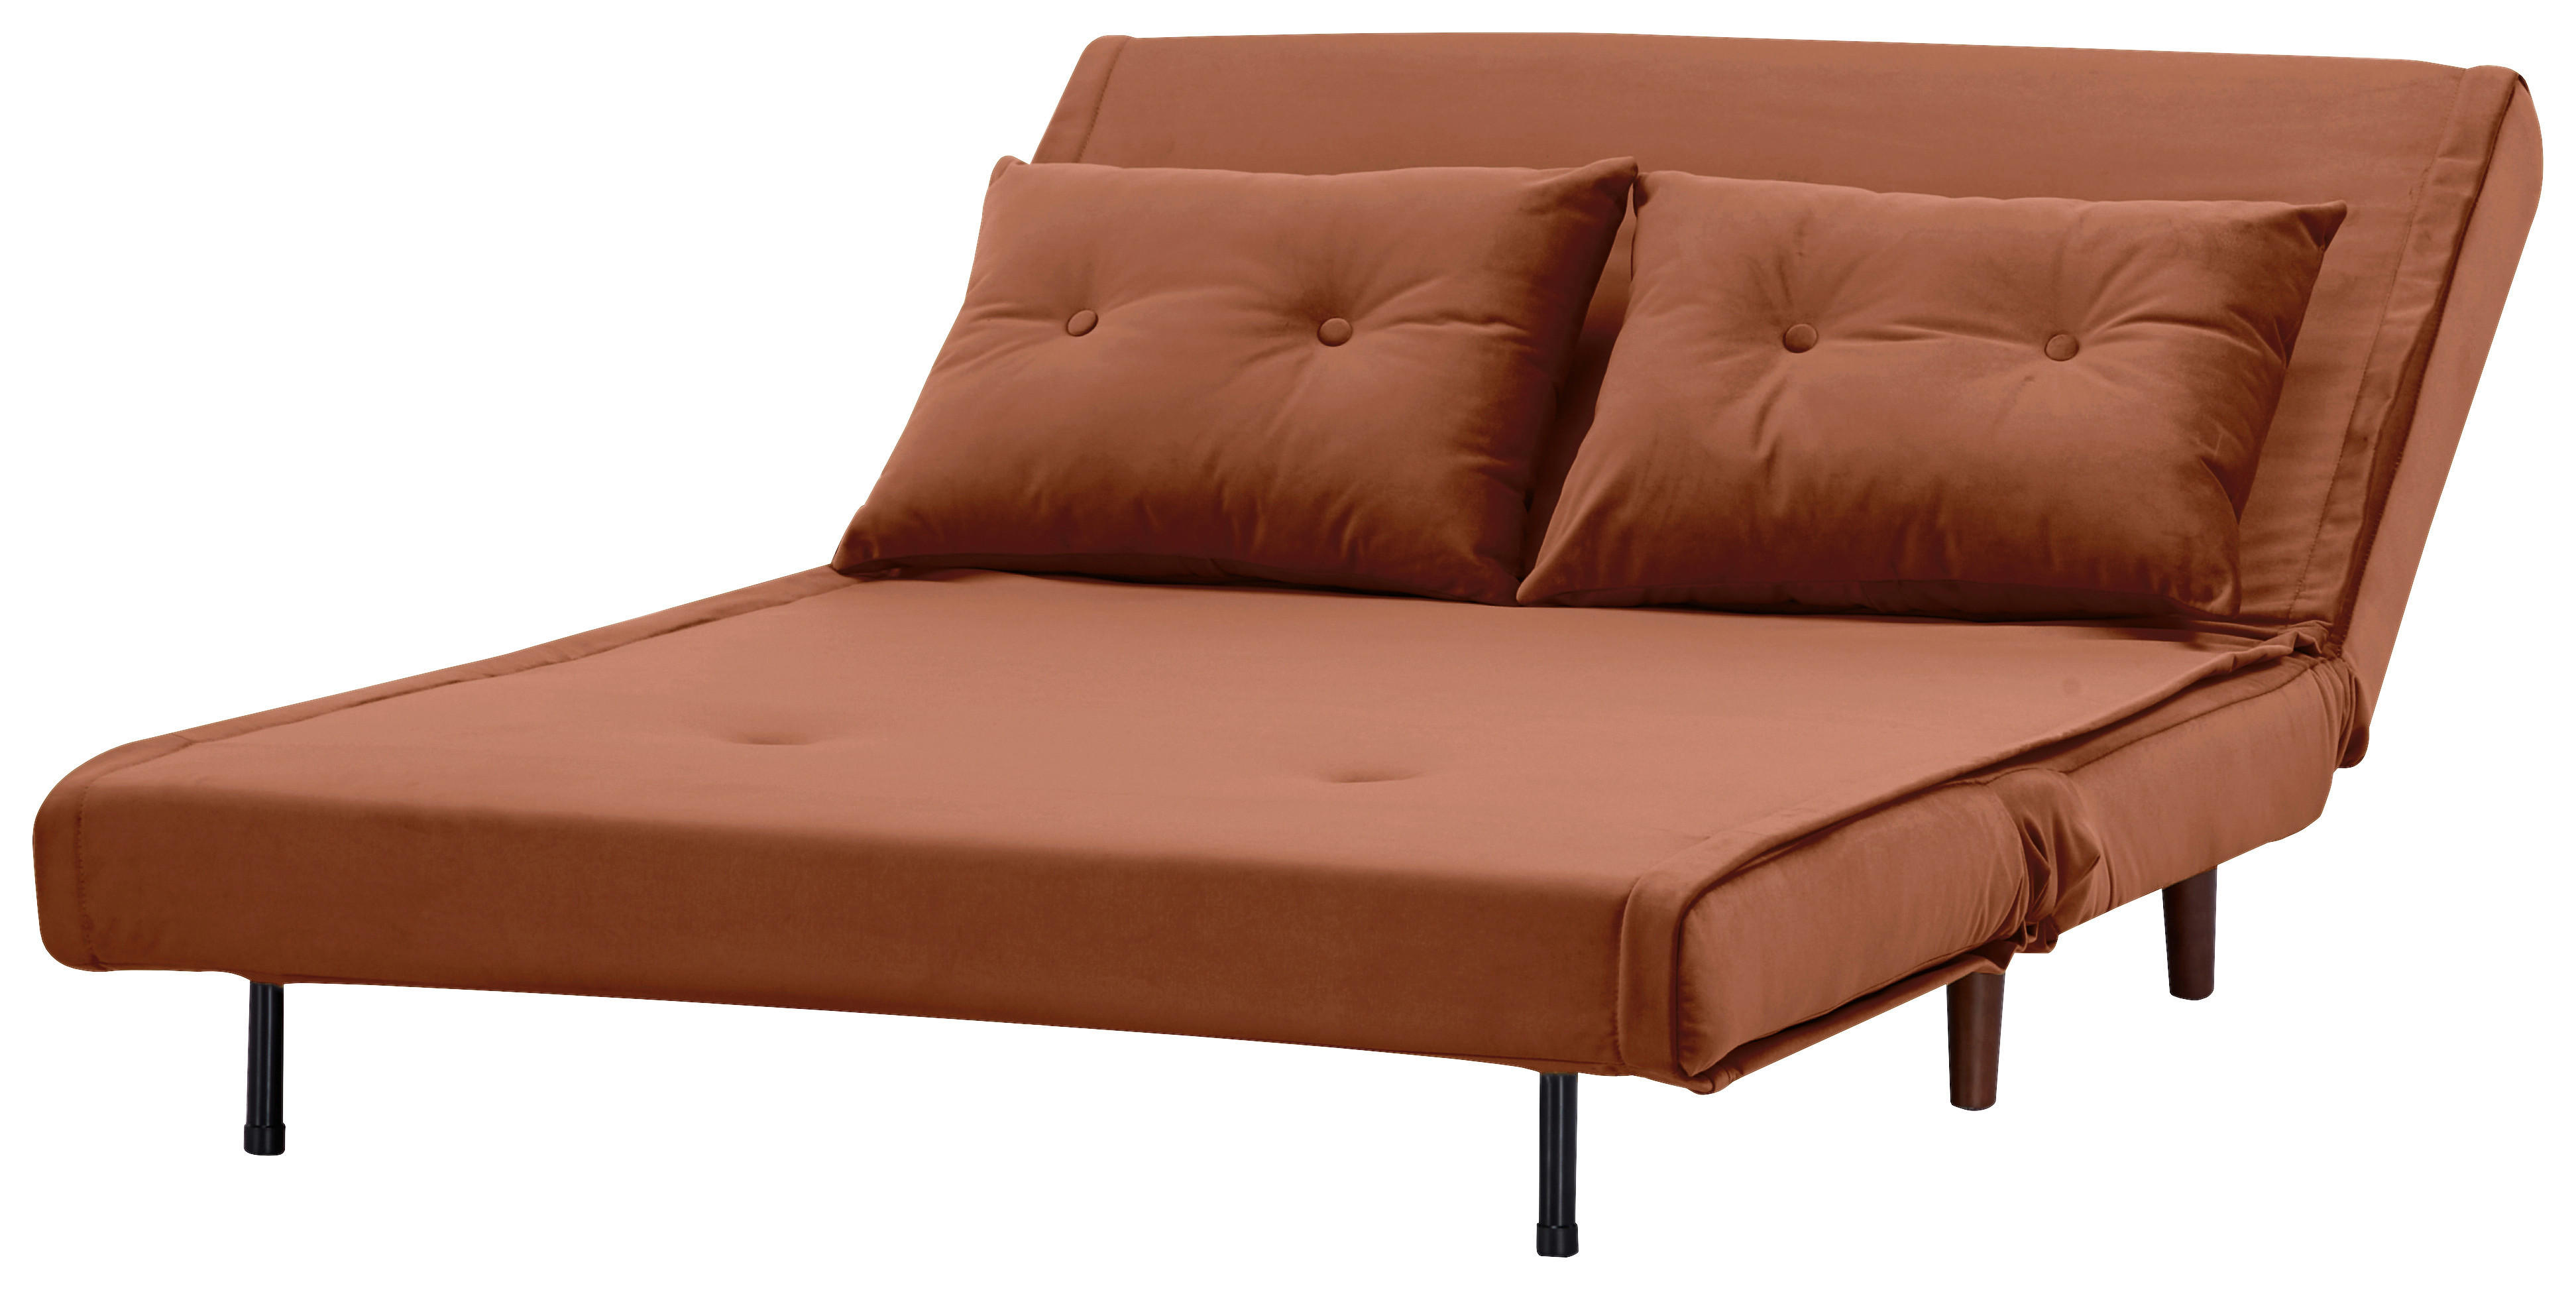 SCHLAFSOFA in Textil Orange  - Birkefarben/Orange, Design, Holz/Textil (122/81/88cm) - Livetastic